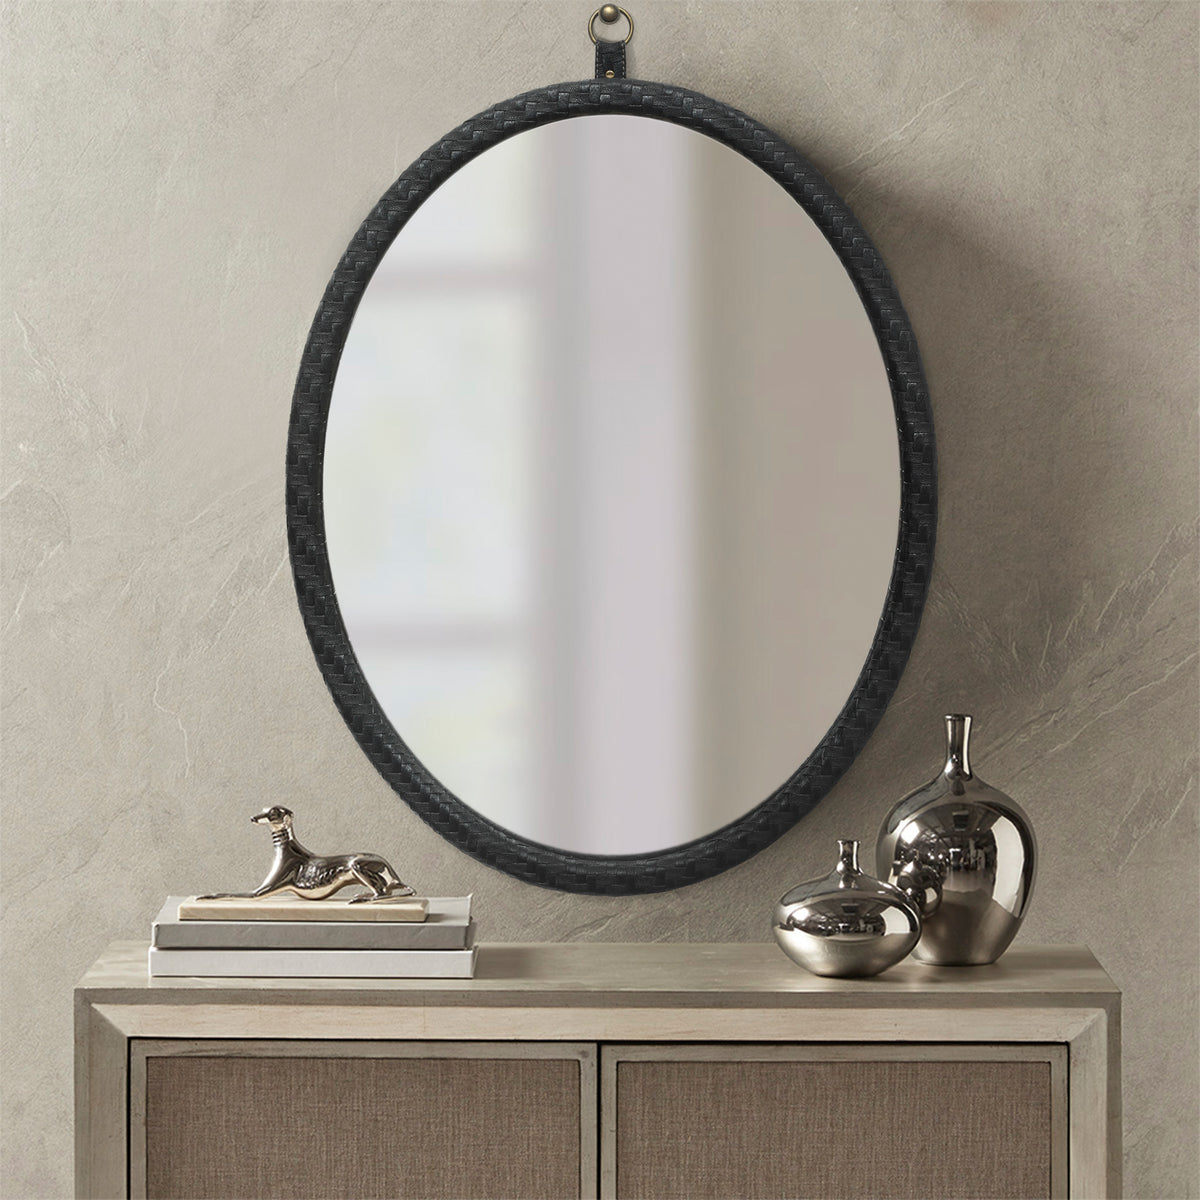 Oval Black Woven Grain Decorative Wall Mirror